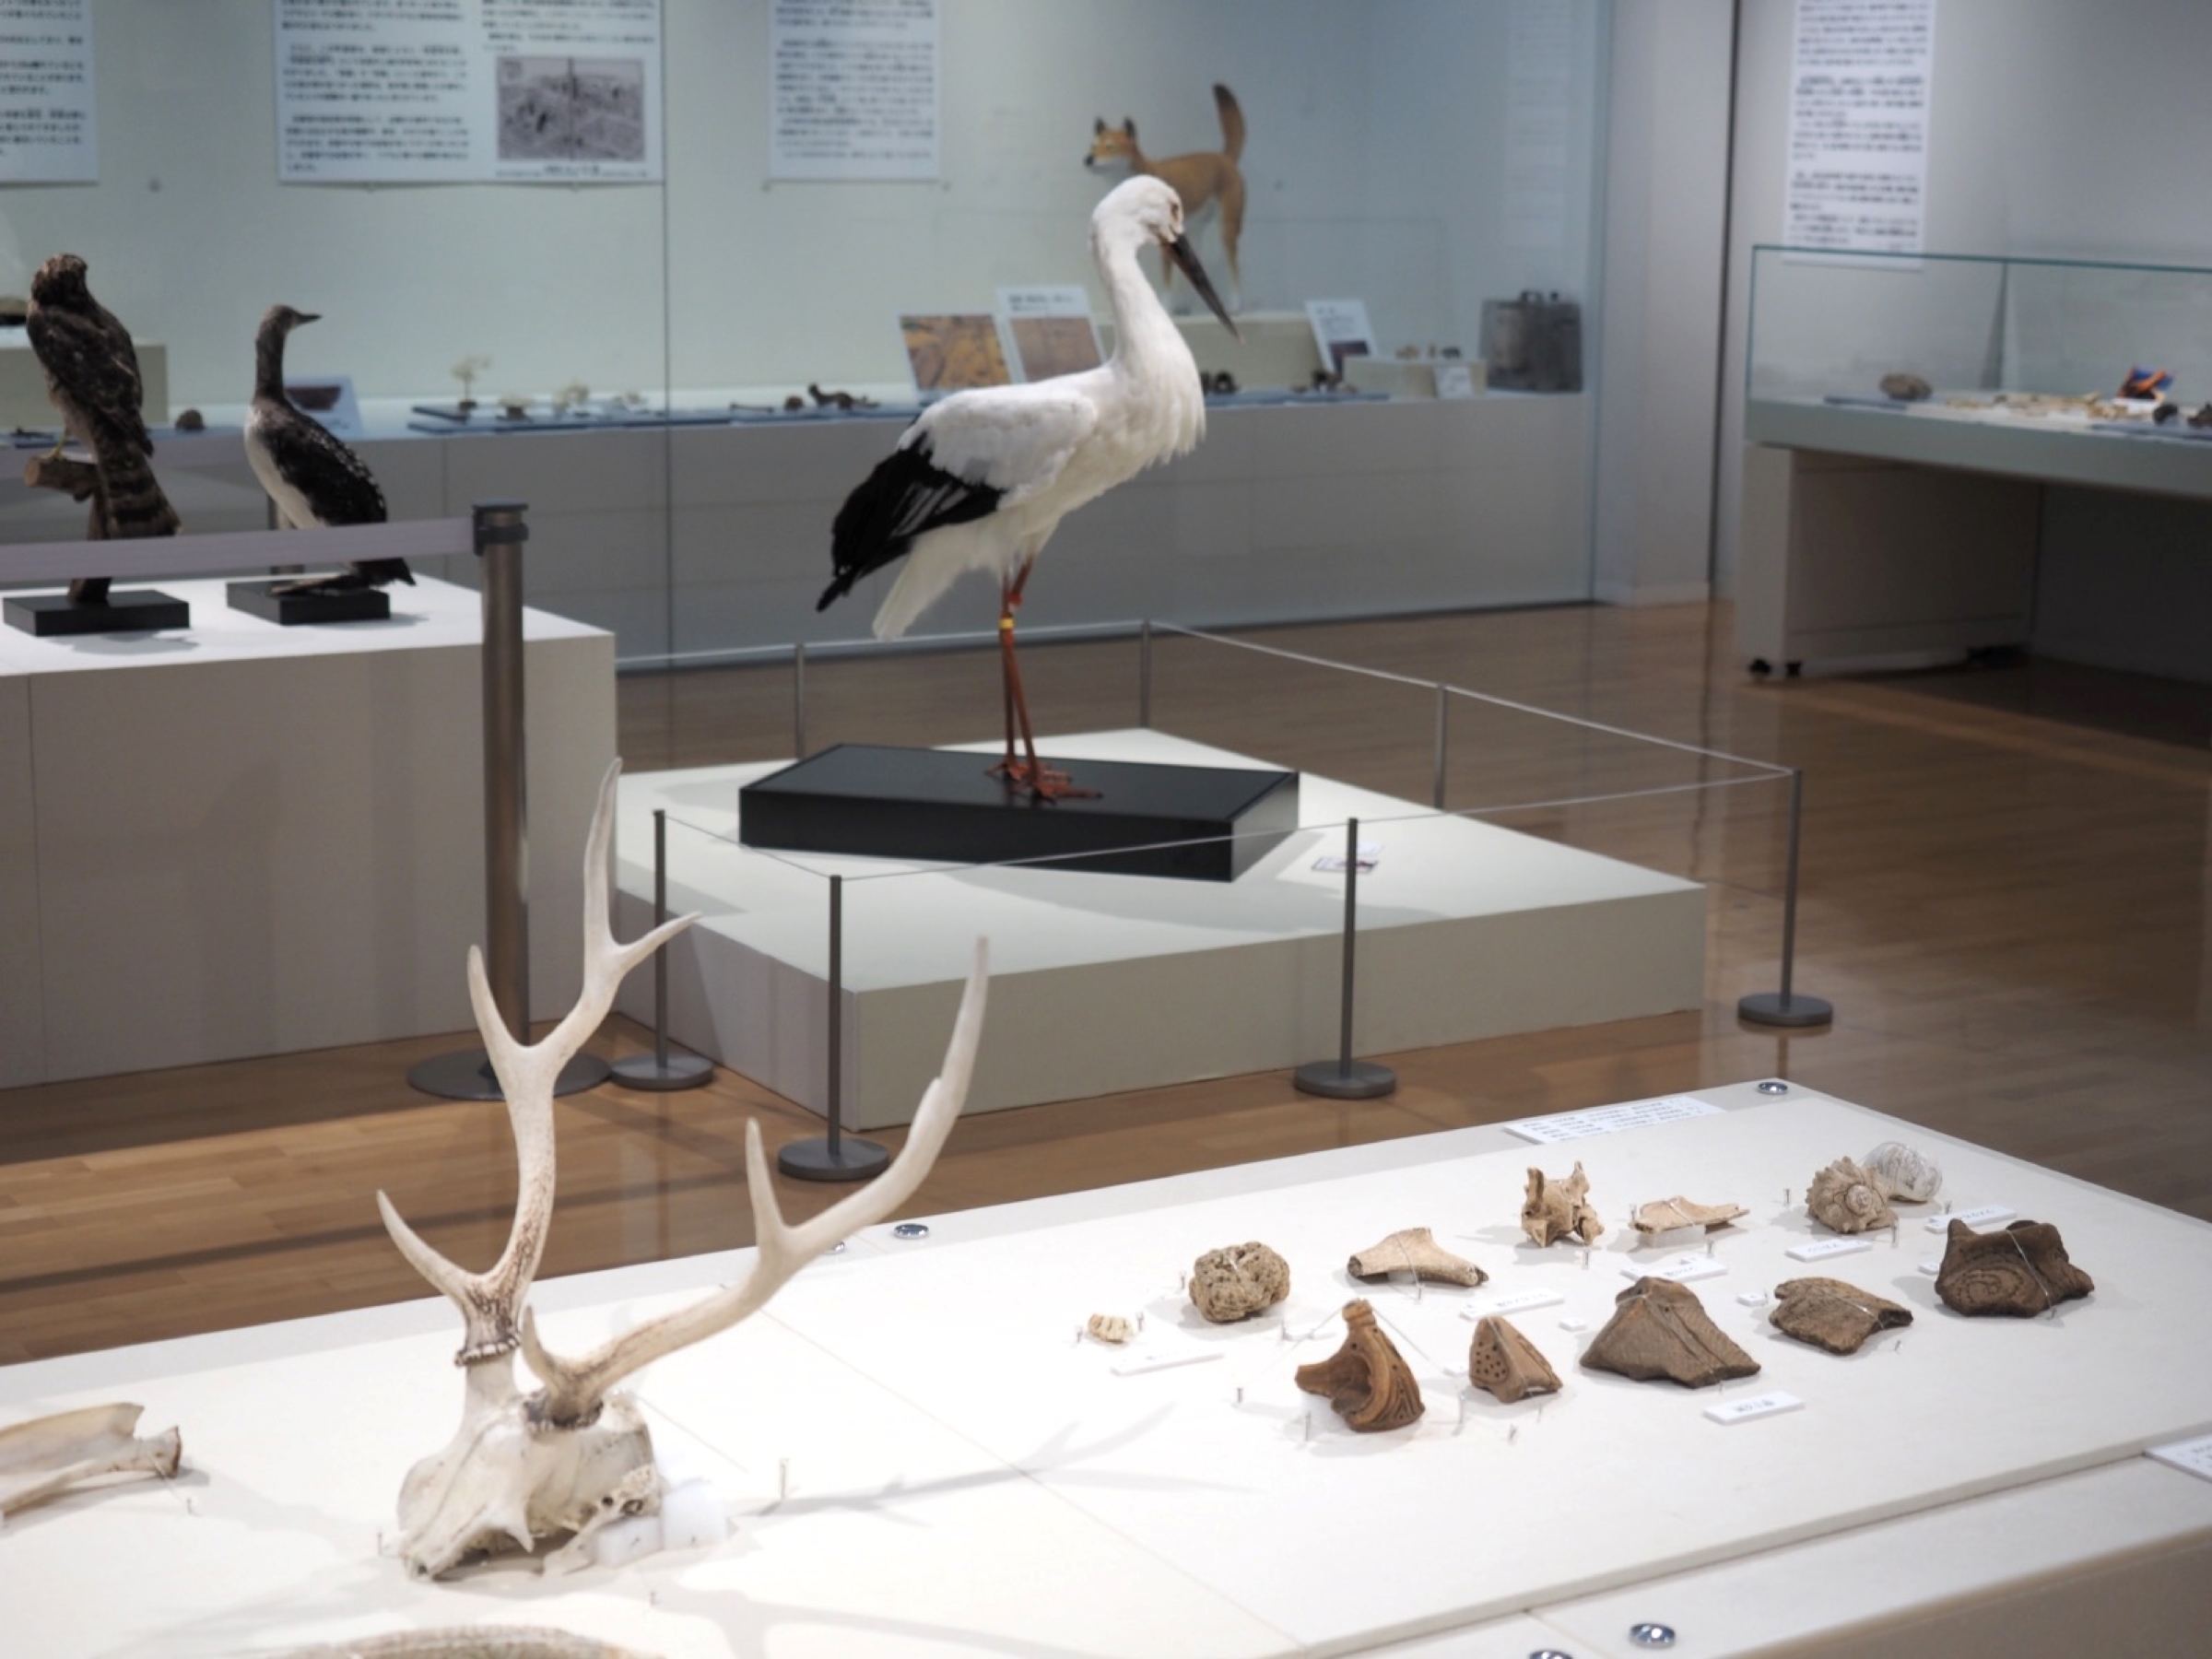  圖3兵庫縣立考古博物館動物與考古學特展展出鹿角製器具等重要文化財